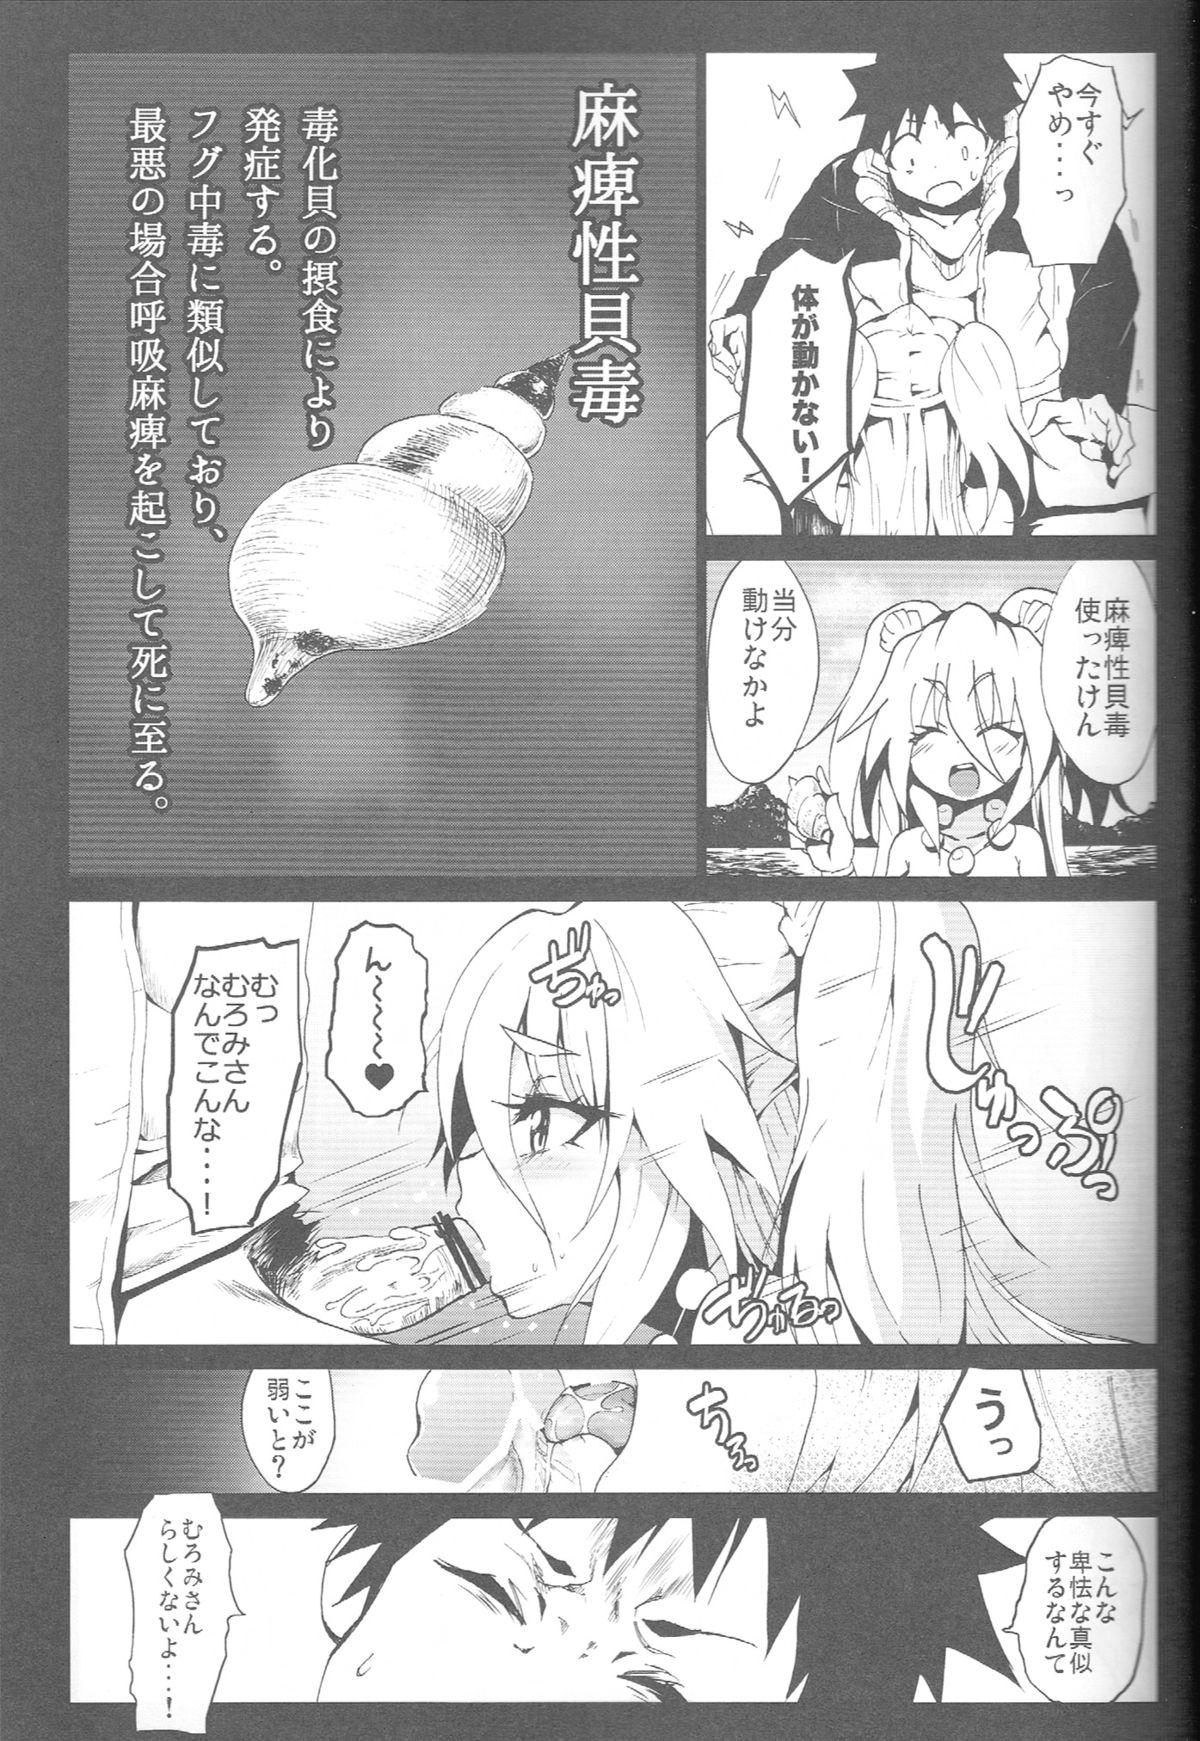 Piss Seashepard to Muromi-san - Namiuchigiwa no muromi-san Spreading - Page 12